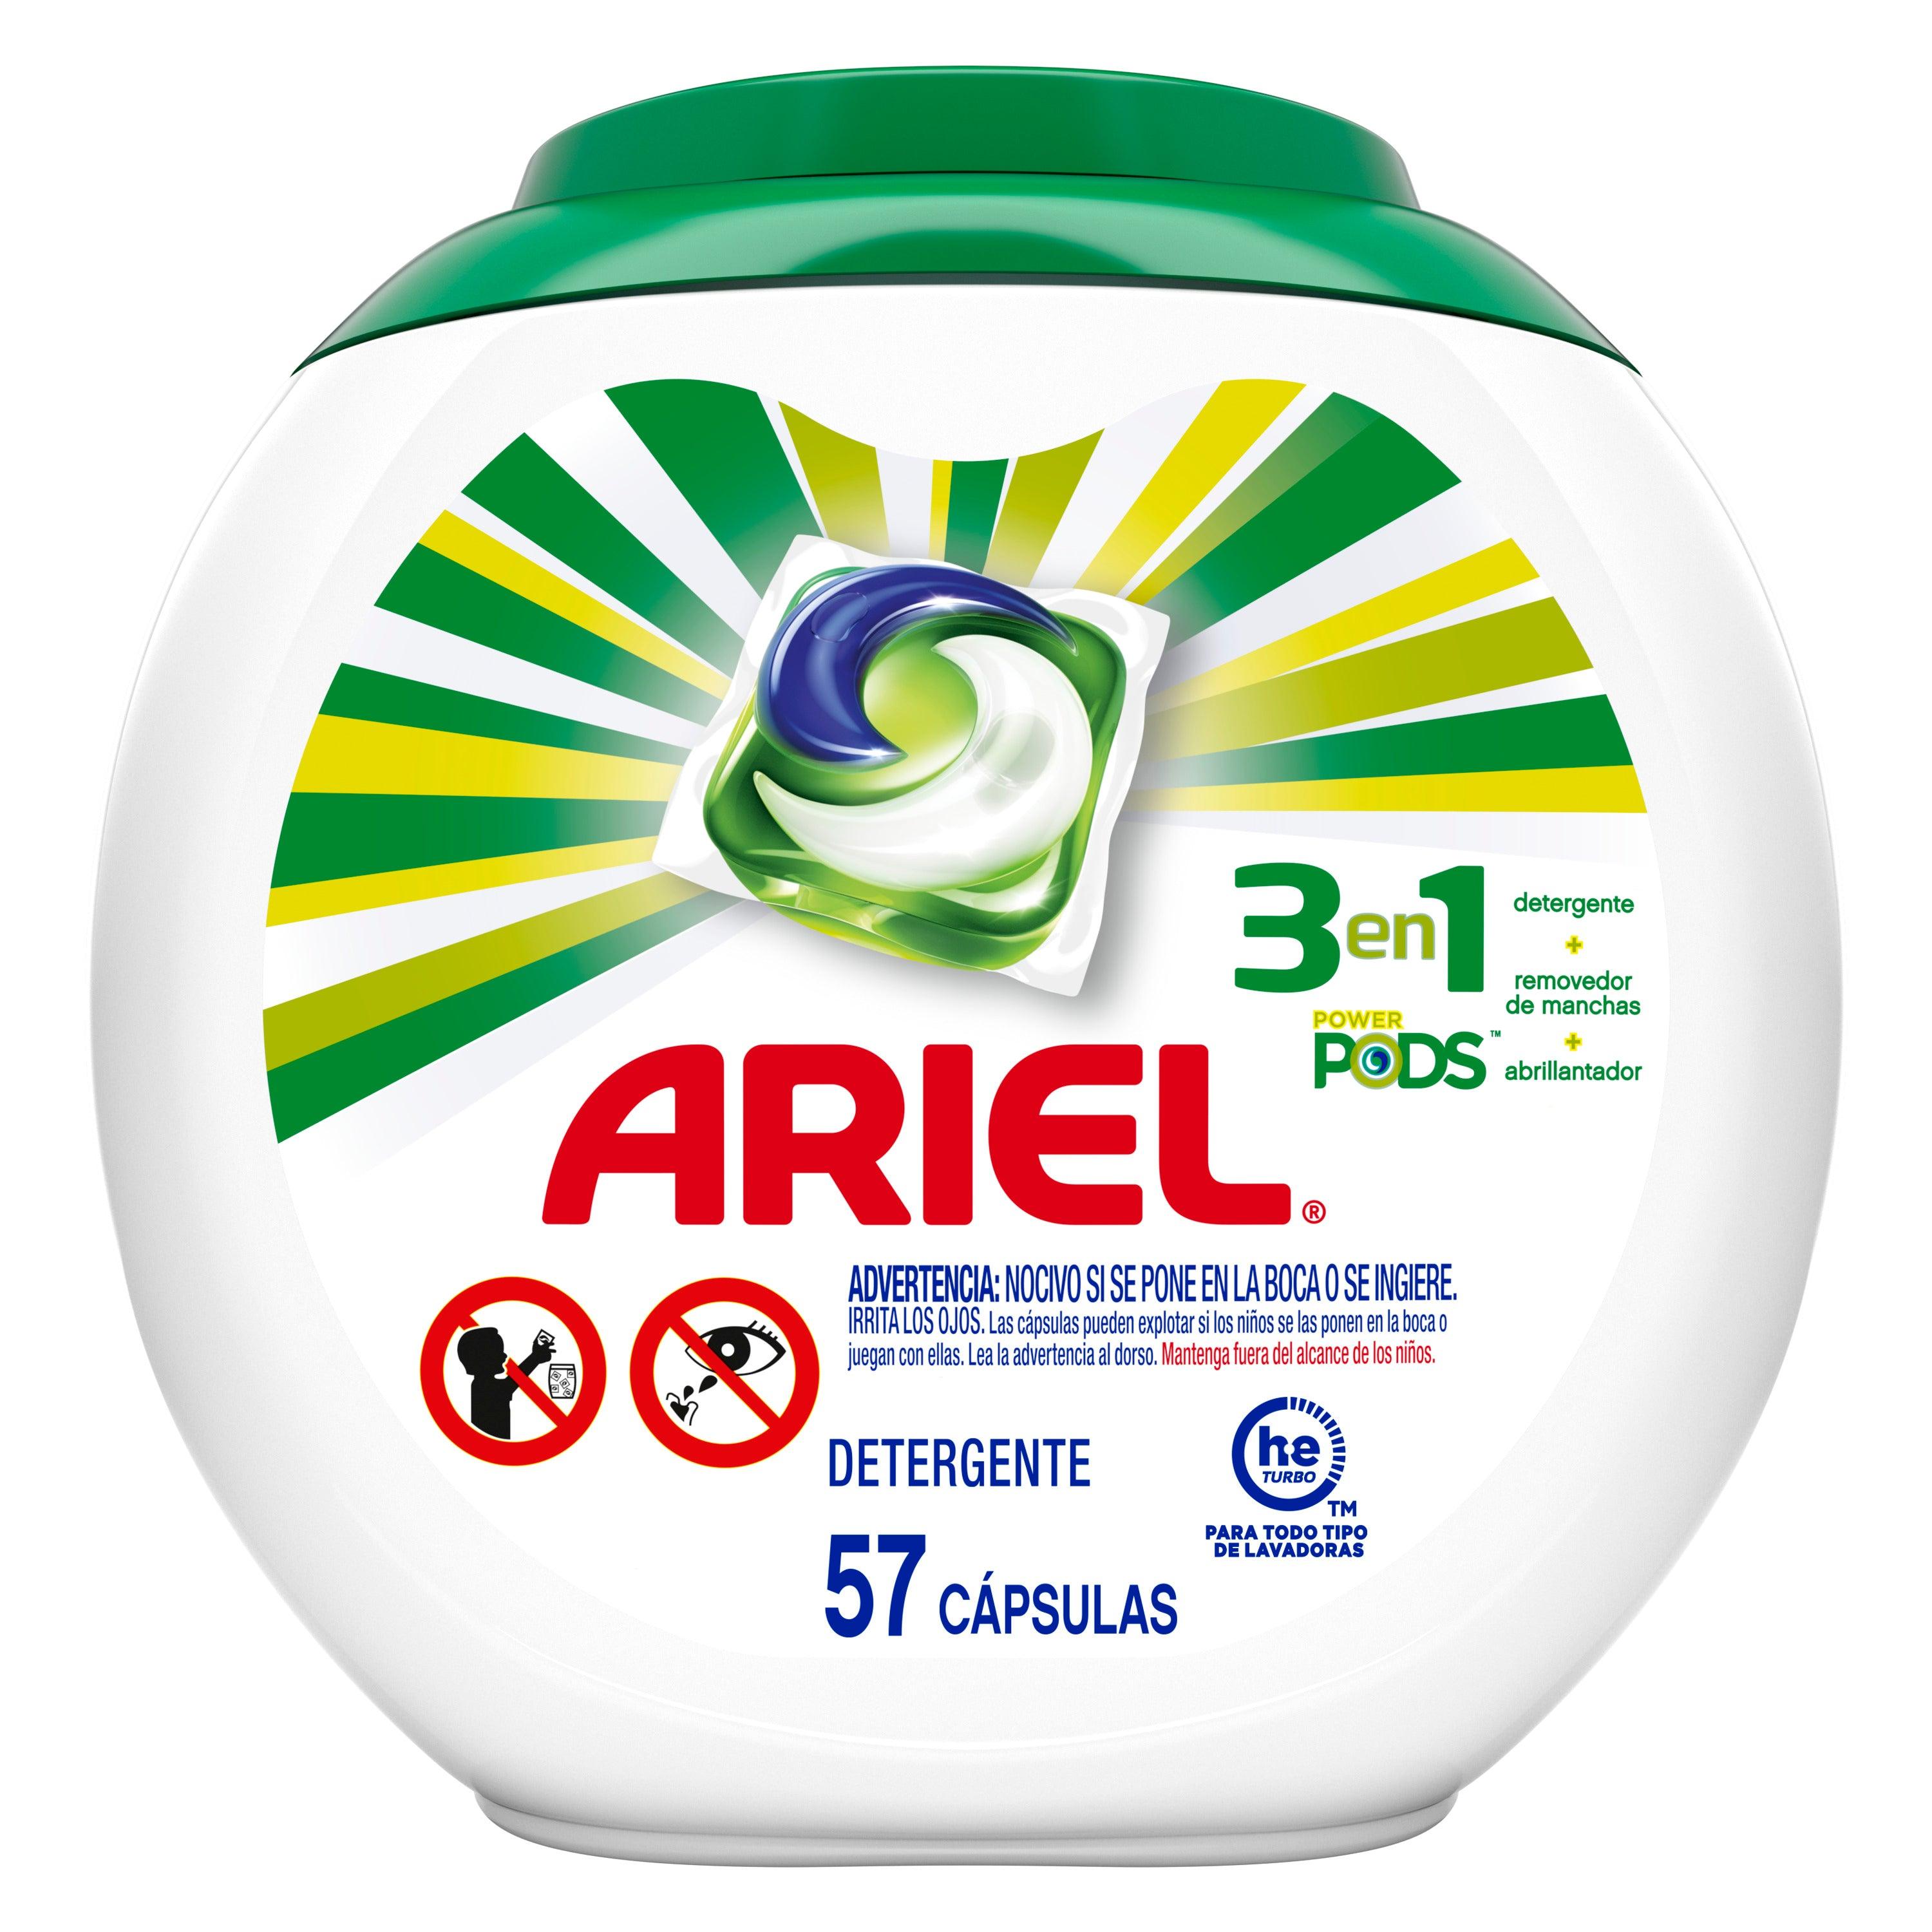 Ariel Pods Allin1 Detergente en Cápsulas para Lavadora, Original